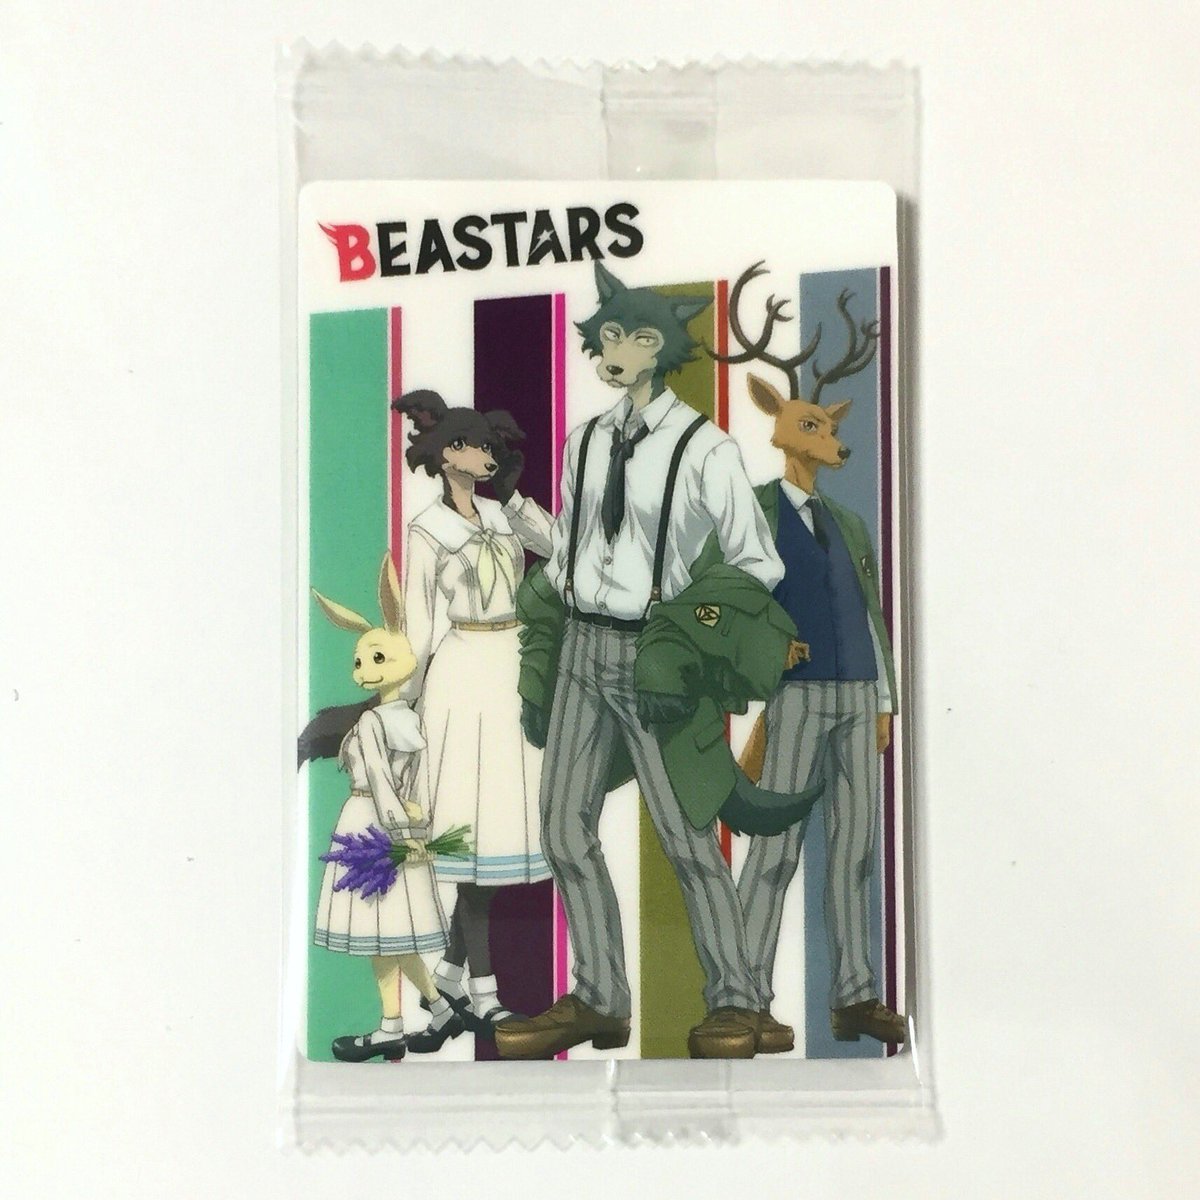 Uzivatel Hiro Na Twitteru Beastars ウエハースのプラカード １７枚目は ビースターズ展でポスターや等身 大パネルでも使用されてたイラストだね このカードのイラストのルイはちゃんと身長差再現されてる